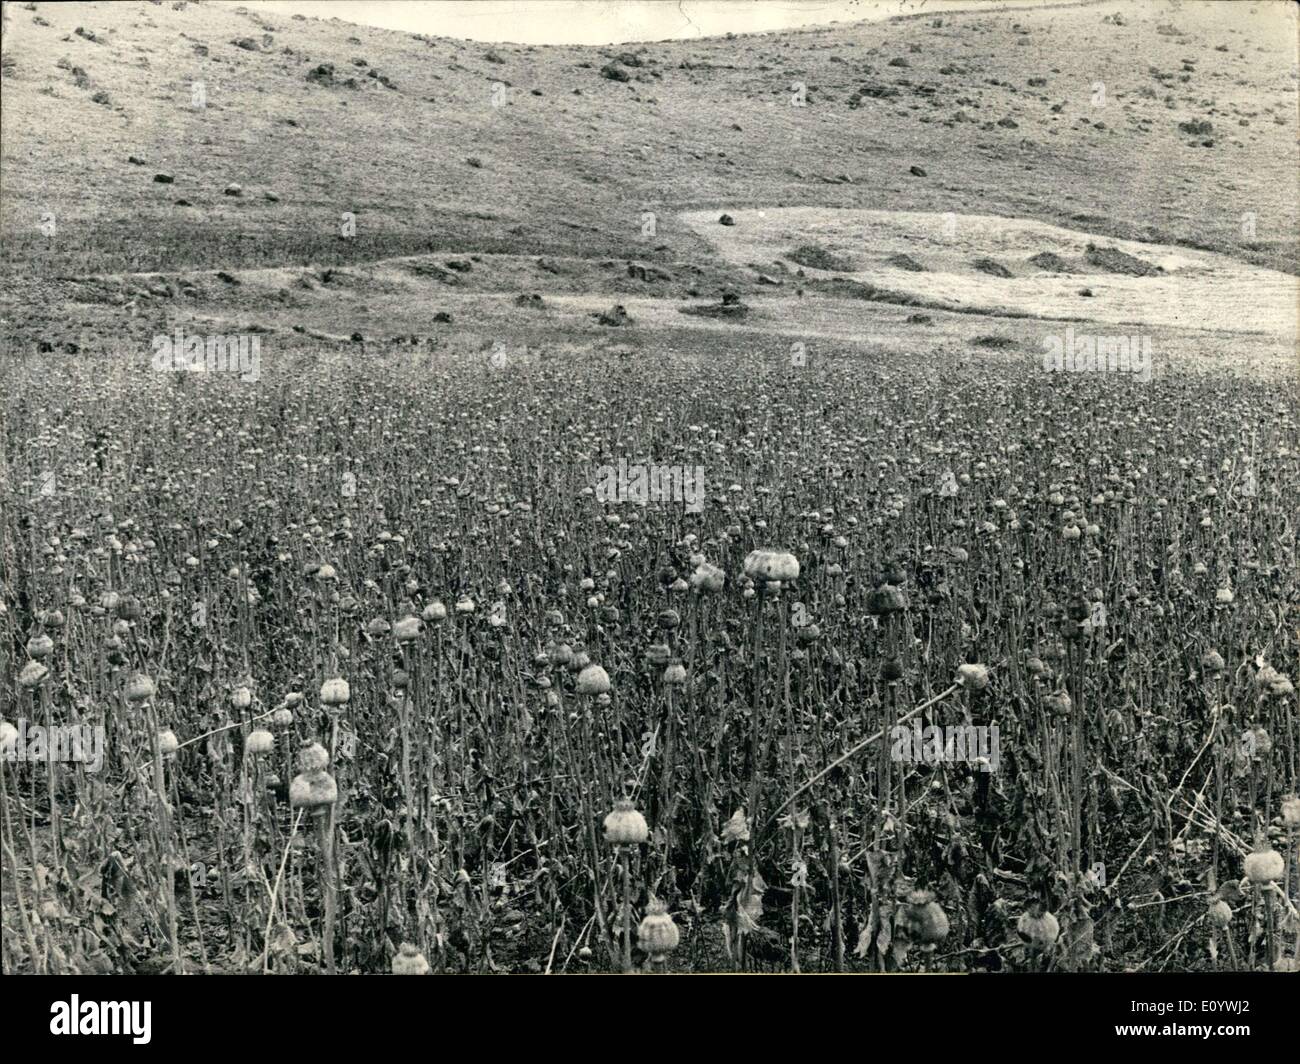 8. August 1971 - die letzten Opium-Ernte in der Türkei: nach the Pentagon haben der türkischen Regierung warnte mehrmals, nicht länger die Mohn-Kulturen, die etwa 100'000 Mohn-Grubber können versammeln sich in das letzte Mal so gefährlich gut. Türkei bis jetzt produziert etwa 125 Tonnen Opium pro Jahr, aus die mehr als 50 Tonnen sind, auf dem Schwarzmarkt einen großen Klaps davon erreicht verkauft worden die GI in Vietnam. Die USA sind bereit, 5 Millionen Dollar pro Jahr an Ankara erfolgreiche Stopp der Opium-Produktion Zahlen Stockfoto